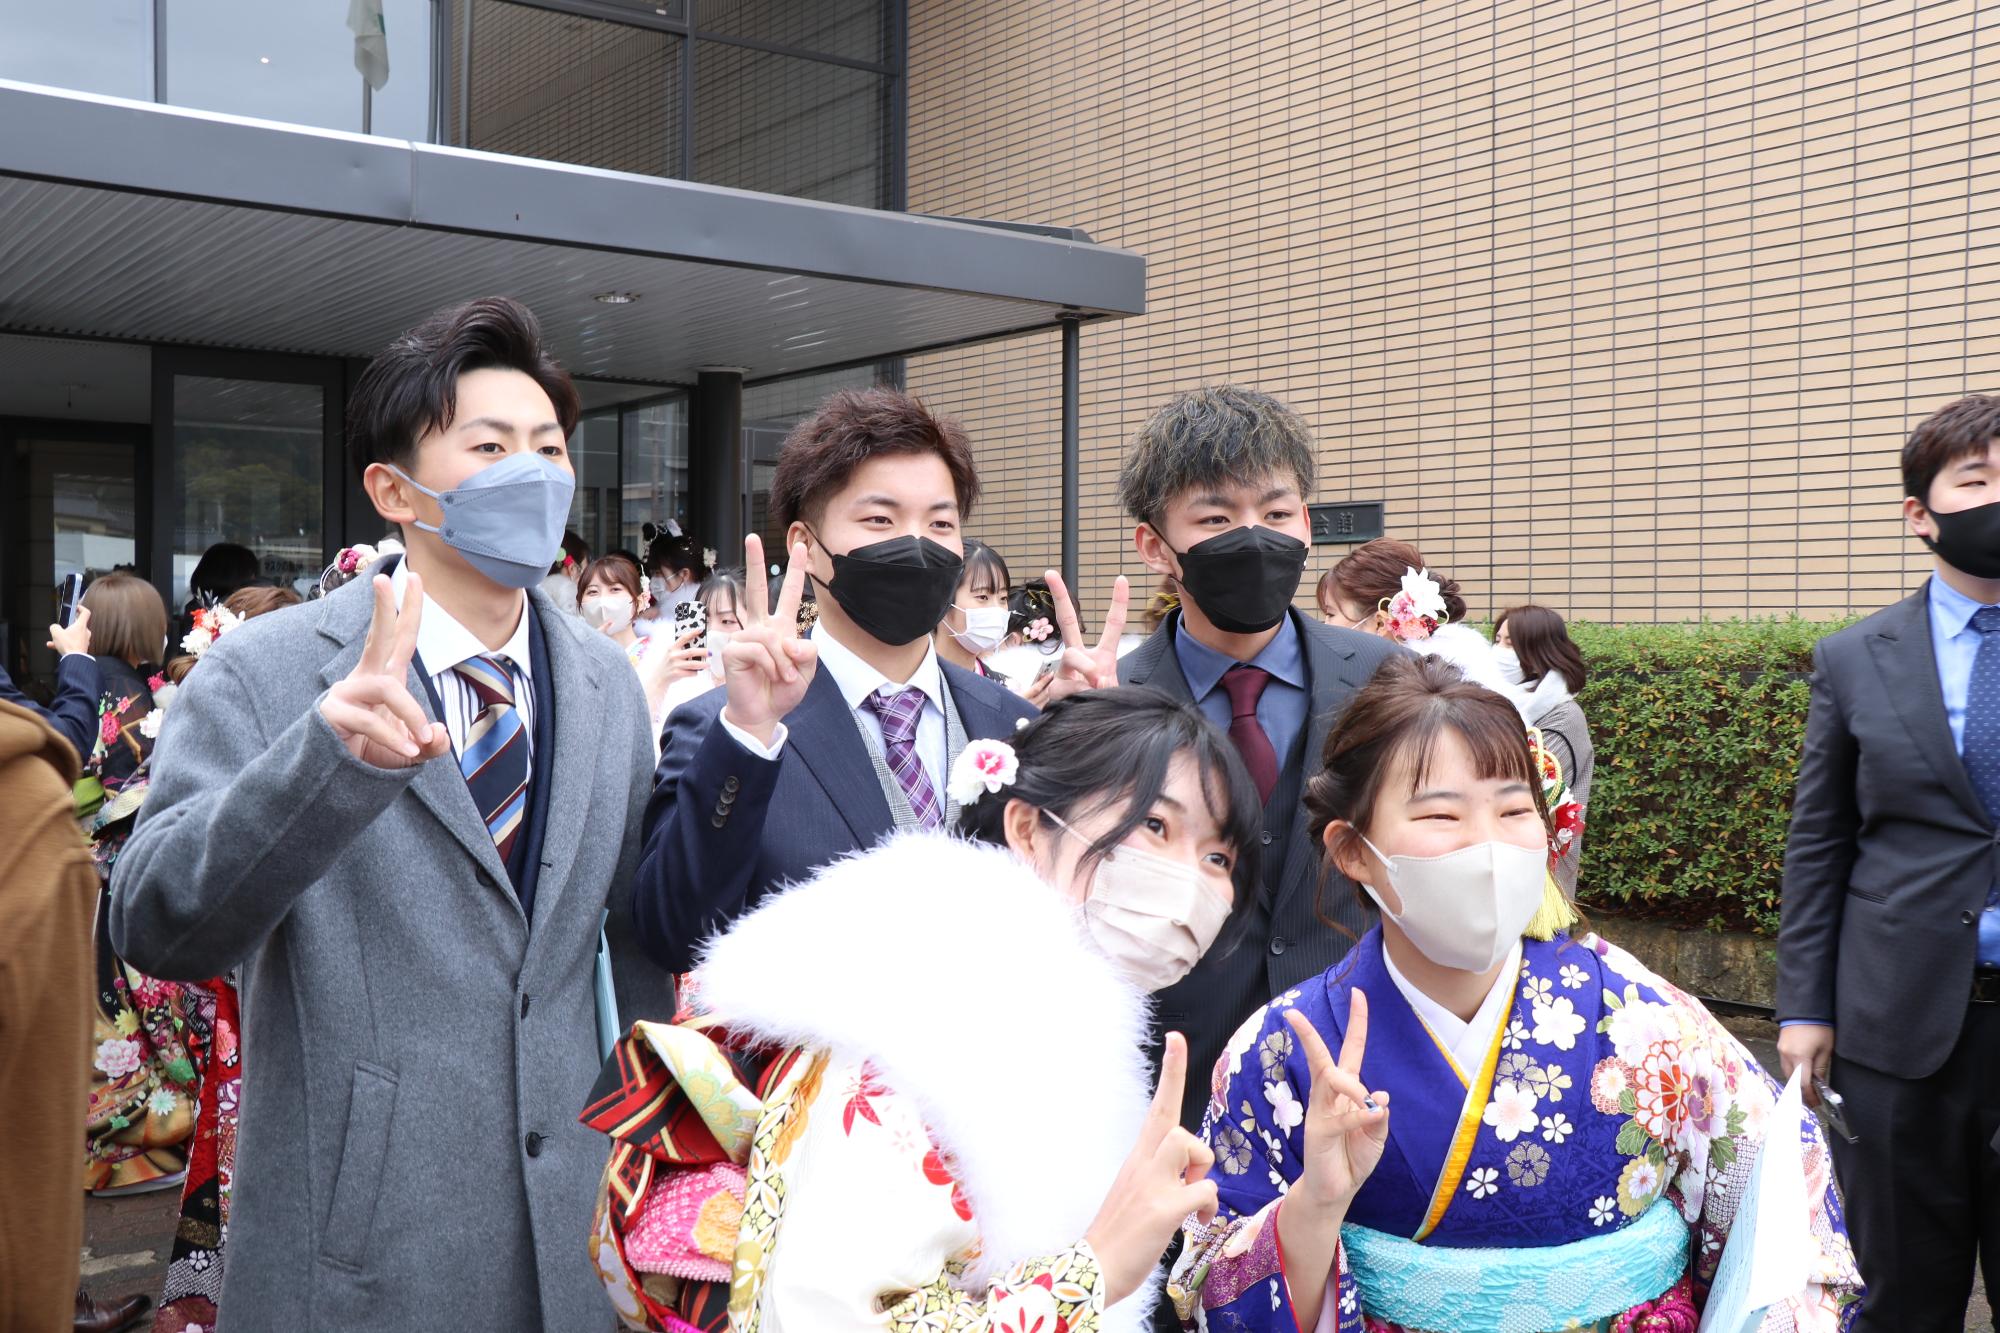 山崎文化会館玄関前で再会を喜び記念撮影をする出席らの写真